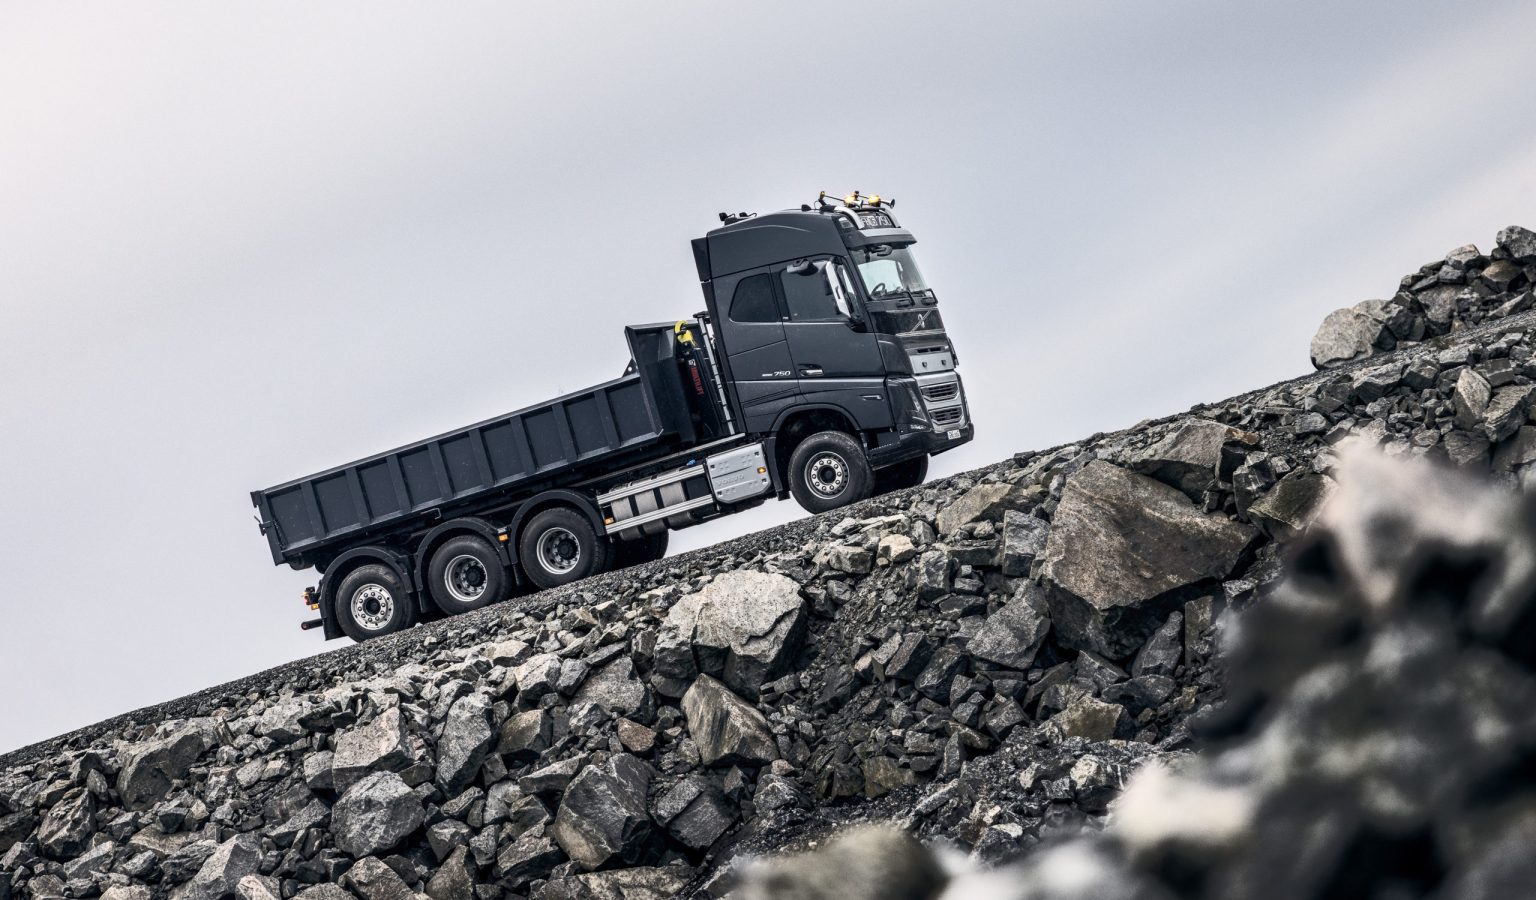 Les Tracteurs de type FH de Volvo sont garantis jusqu'à 800 000 km.
© Volvo